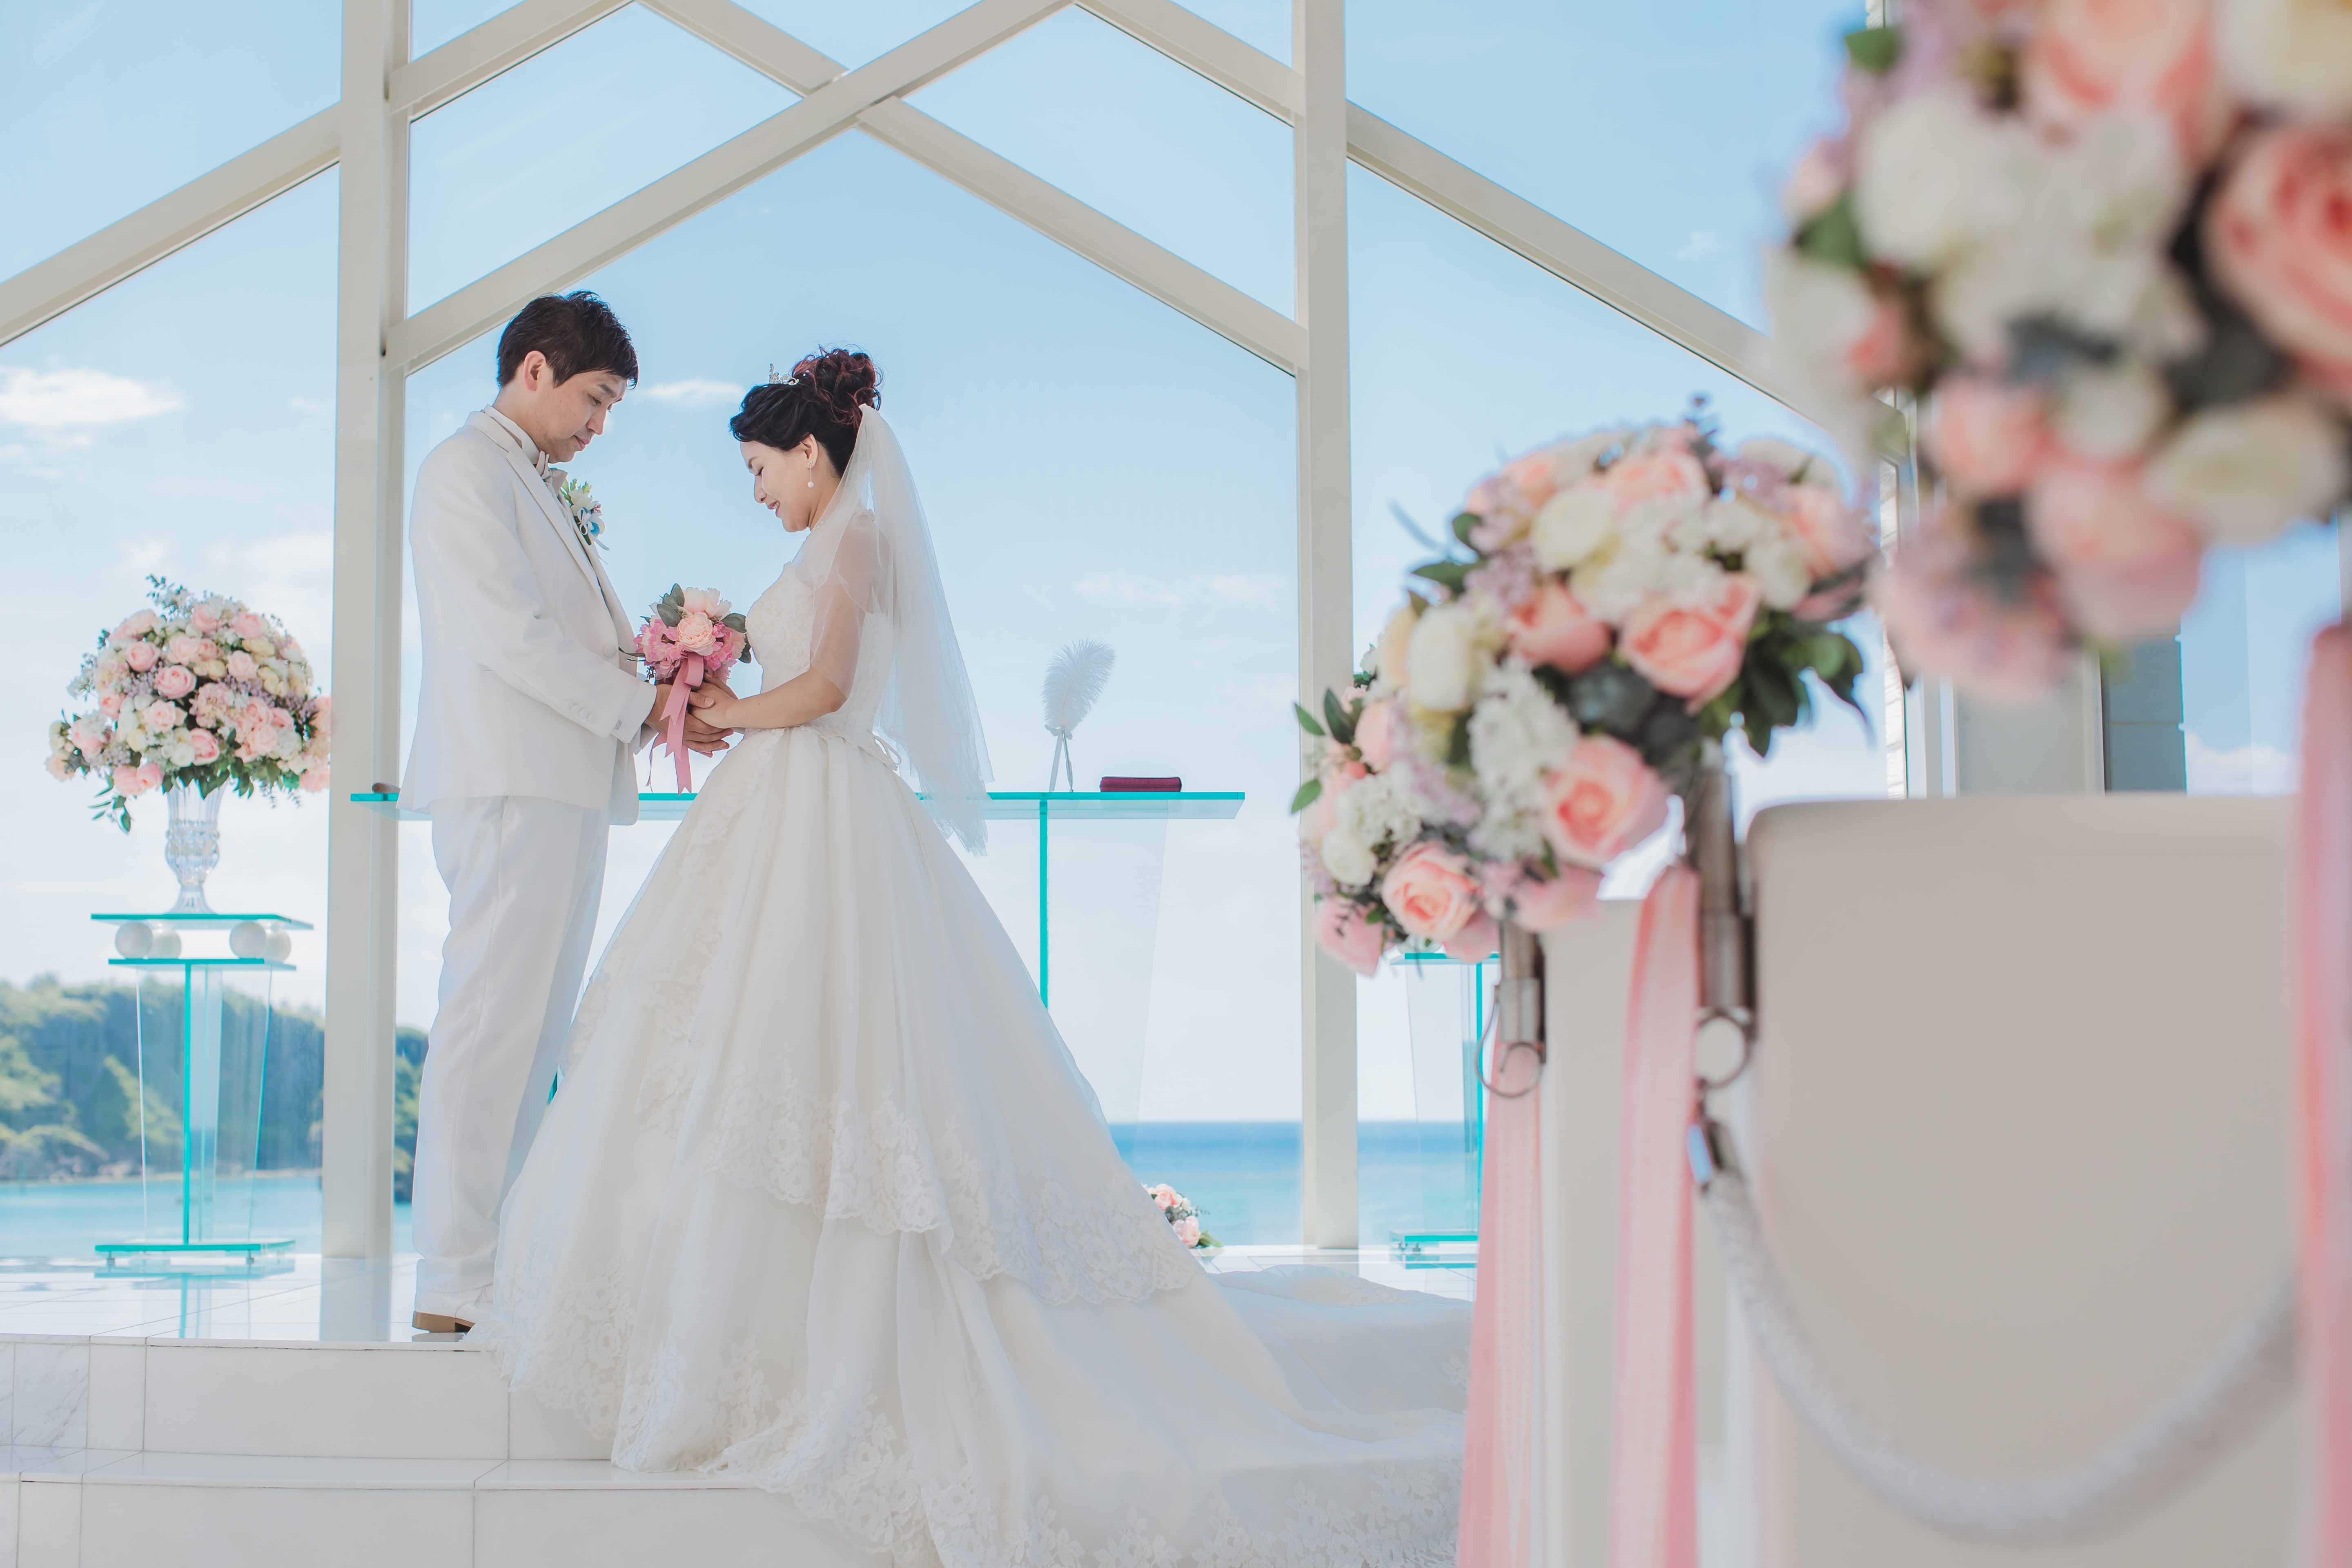 沖縄フォトウェディング チャペル ビーチ撮影 8月日 フォトウェディング 結婚式の前撮りならクリエイティブスタジオ